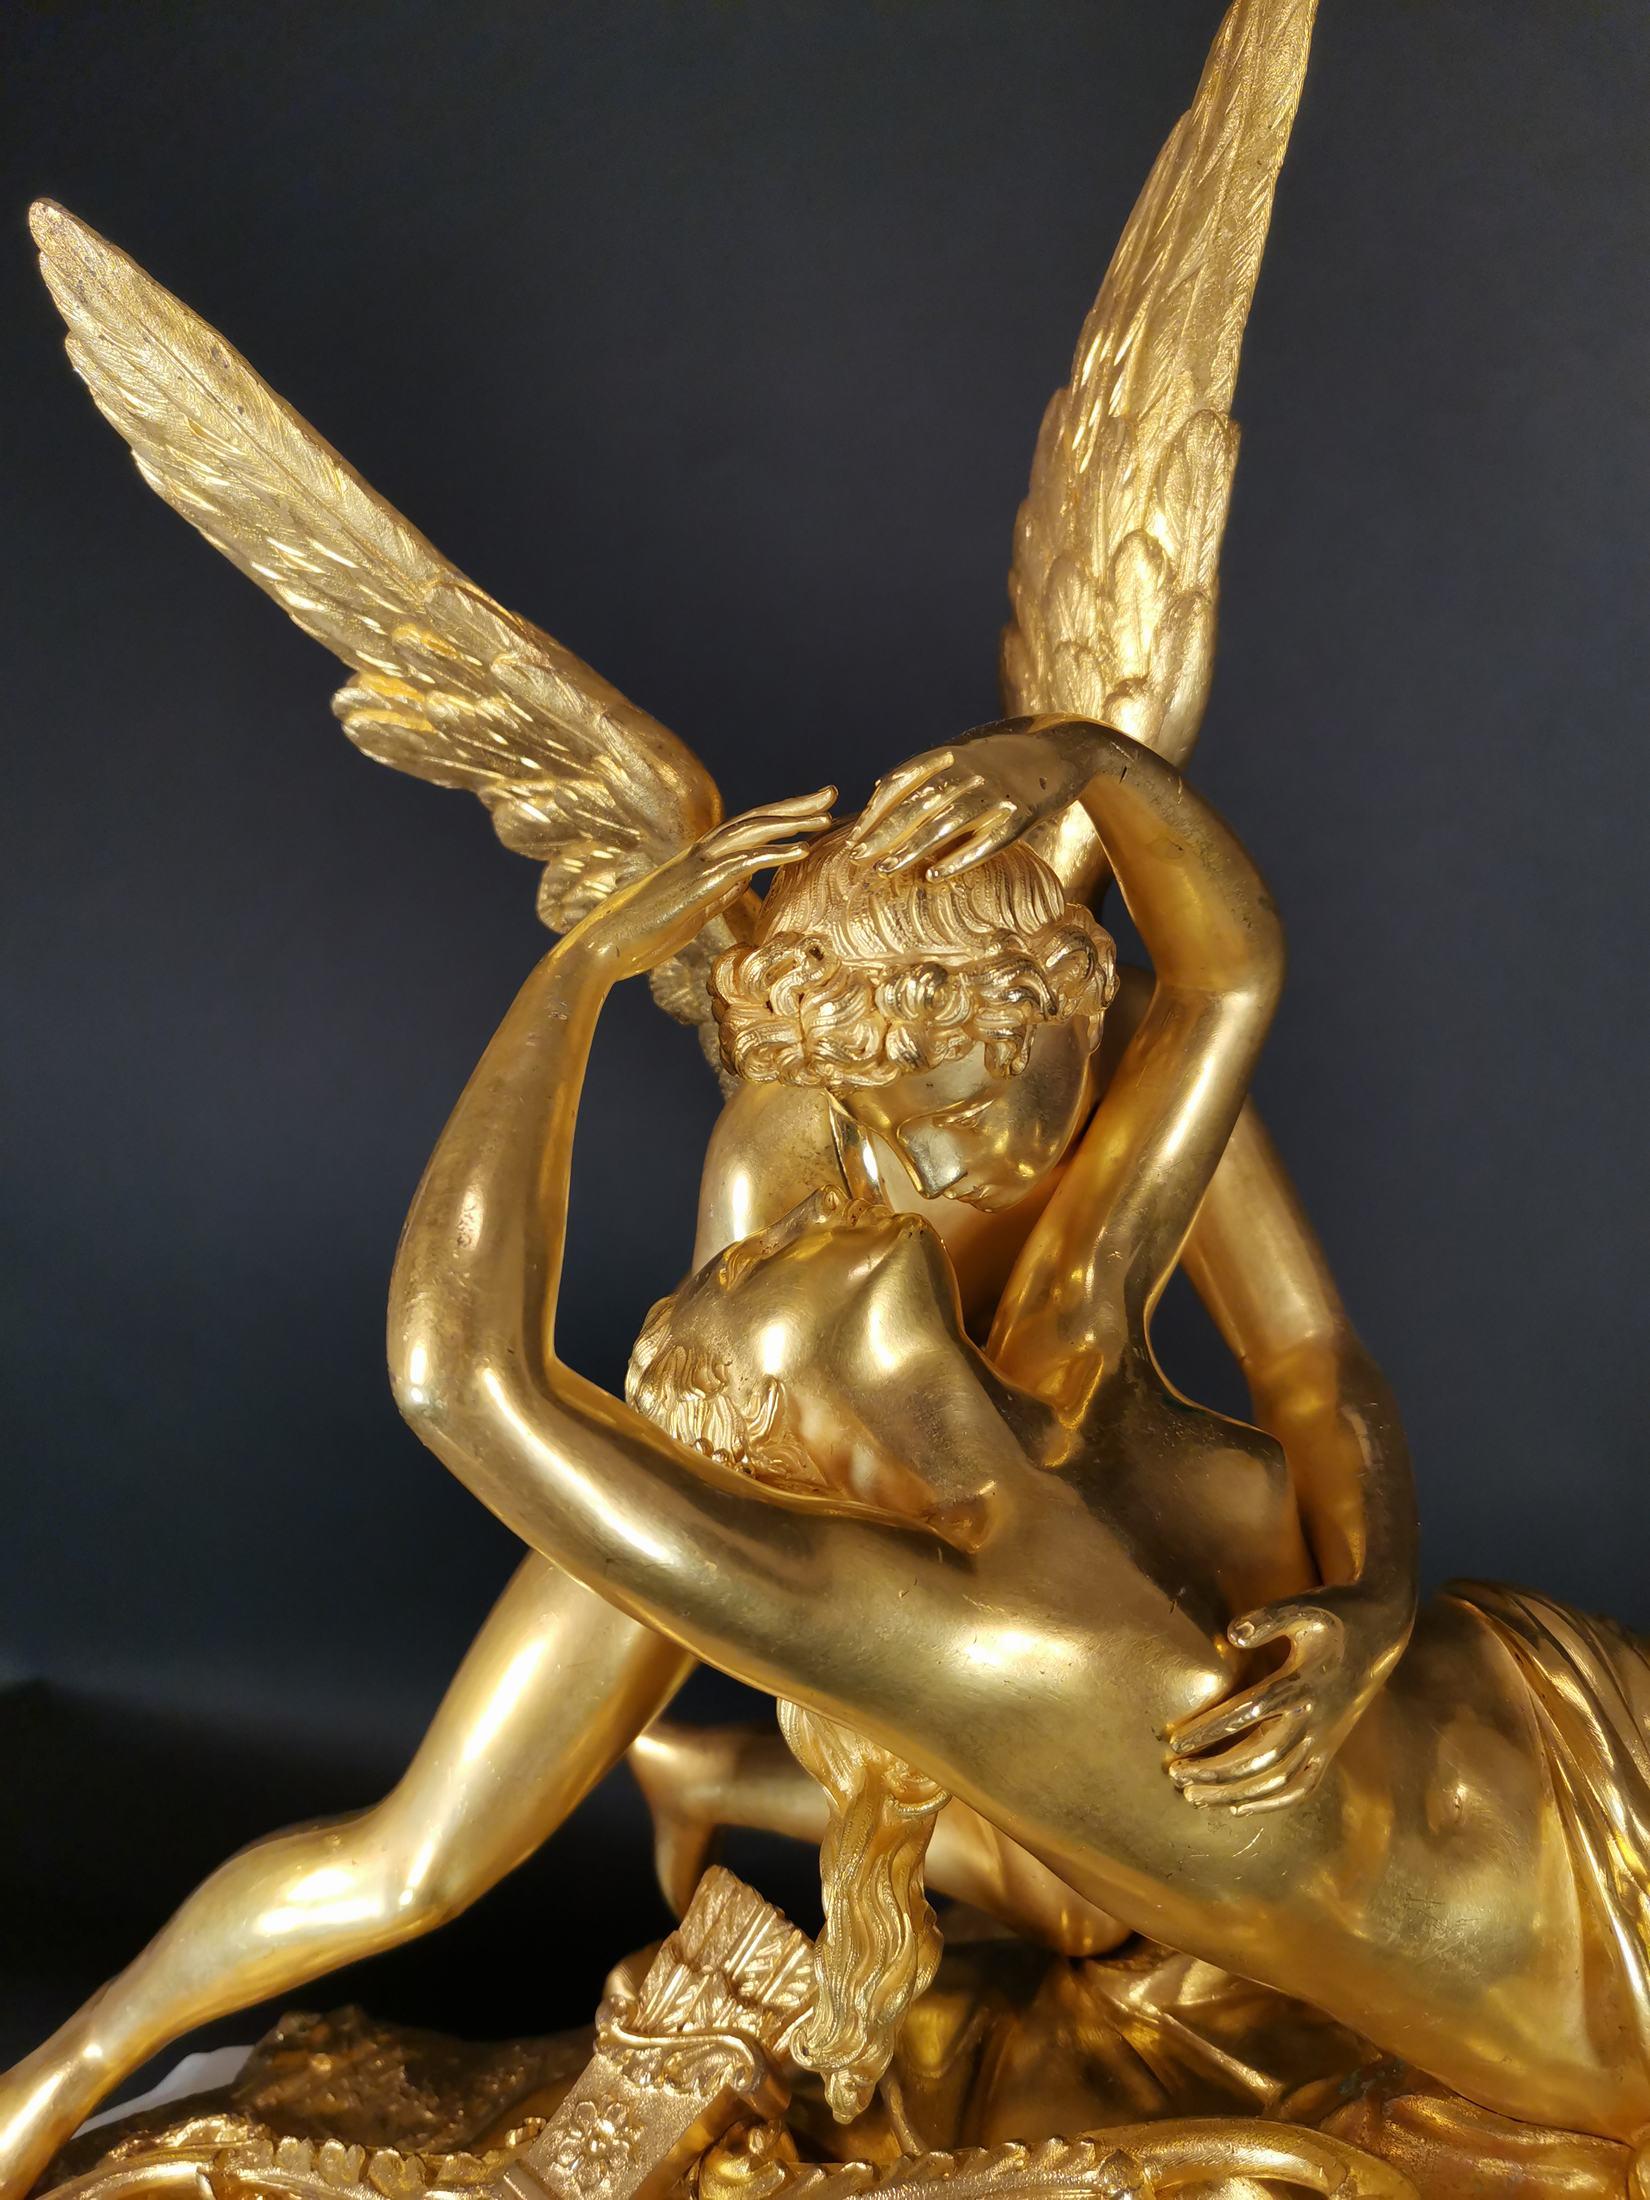 Wichtige Pendel in vergoldeter Bronze und Onyx aus dem neunzehnten Jahrhundert.
Das emaillierte Zifferblatt. 
Hergestellt für den russischen Markt.
Groß: 60 x 55 x 18 cm.
Mit Pendel und Schlüssel 6550 Euro.